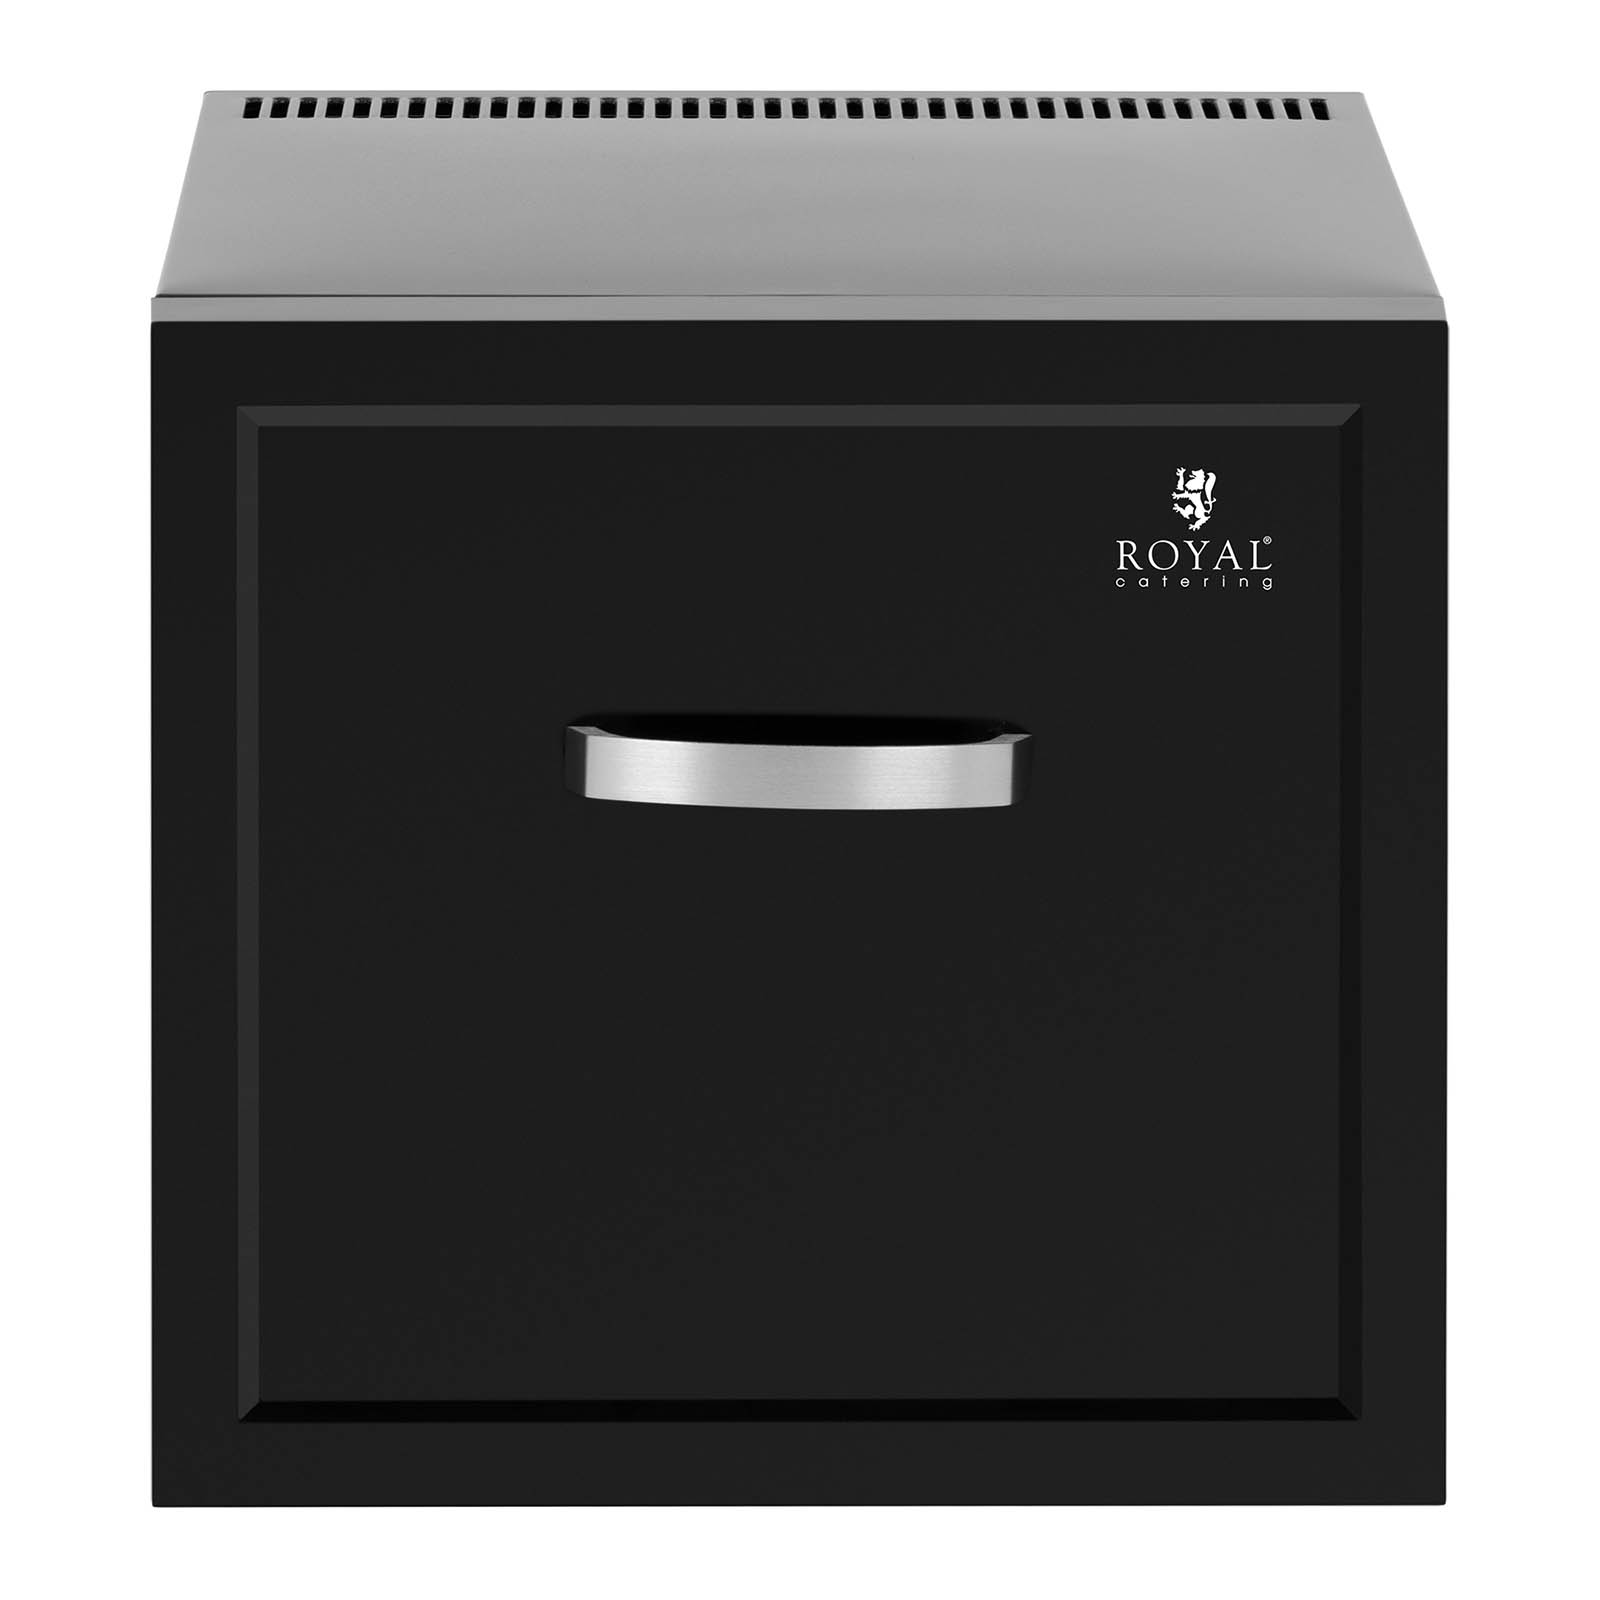 Minibár hűtő - 19 l - fiók - fekete - Royal Catering